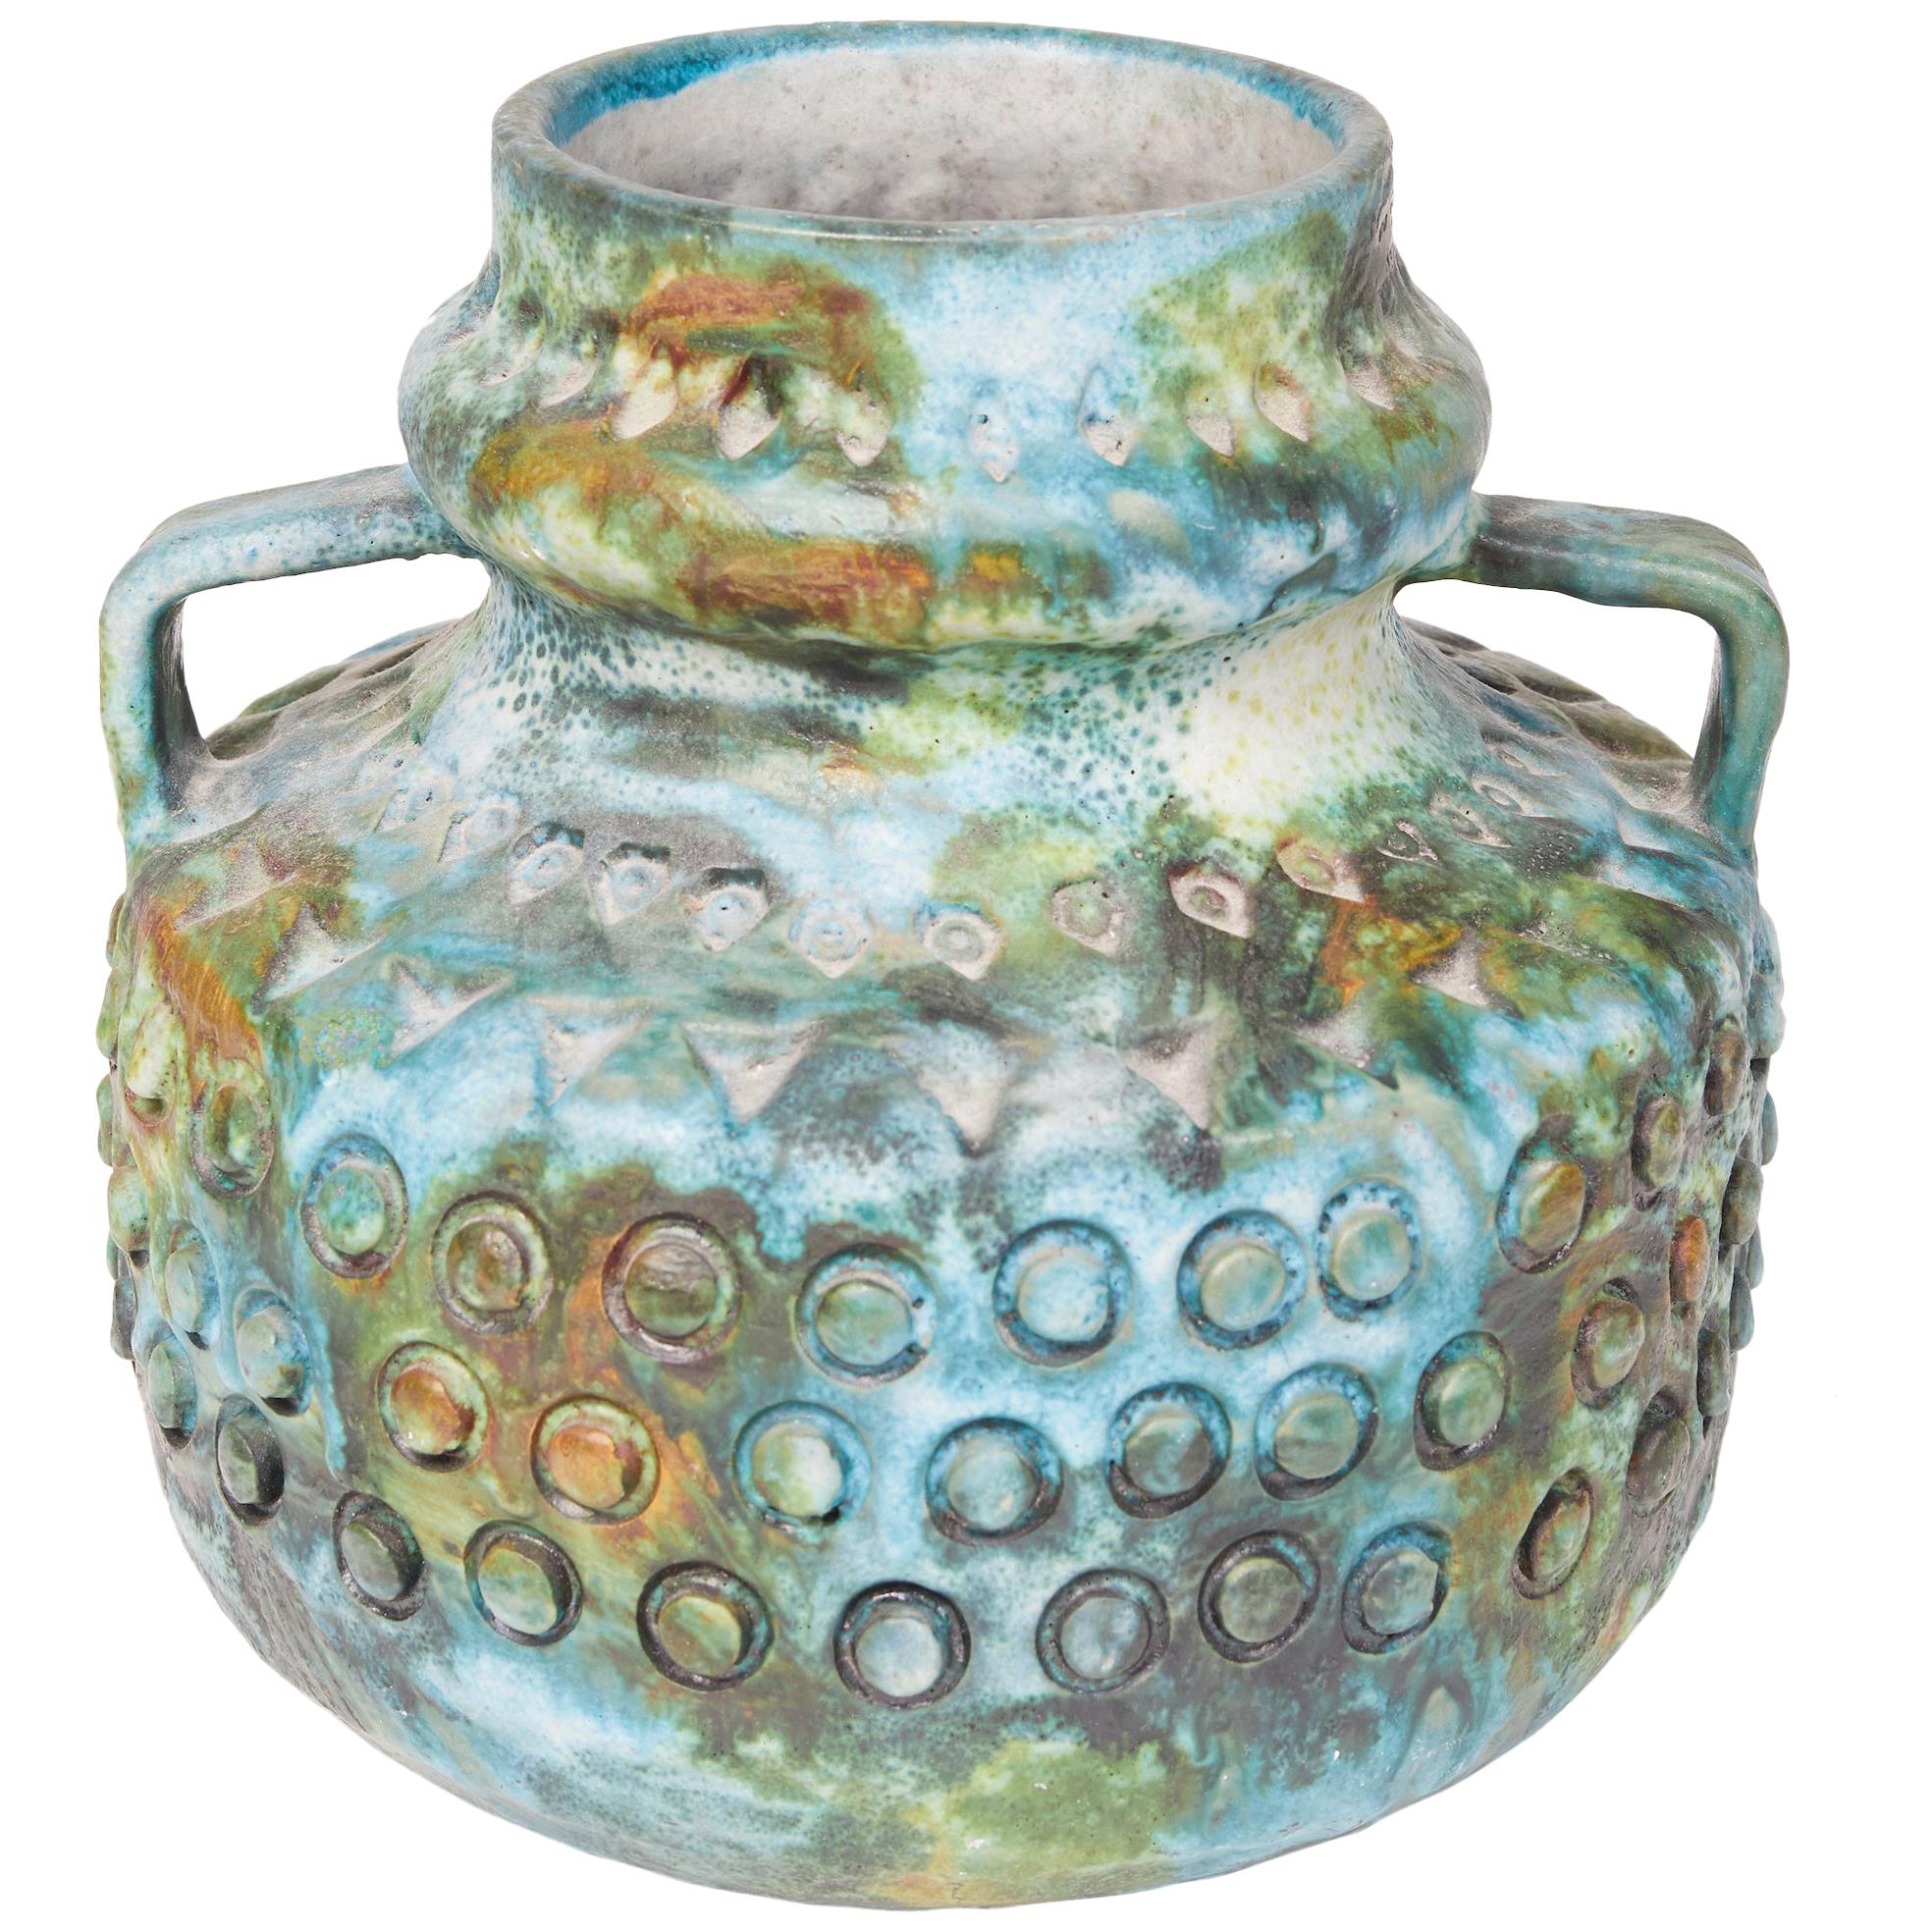 Colorful Ceramic "Sea Garden" Vase by Alvino Bagni for Raymor